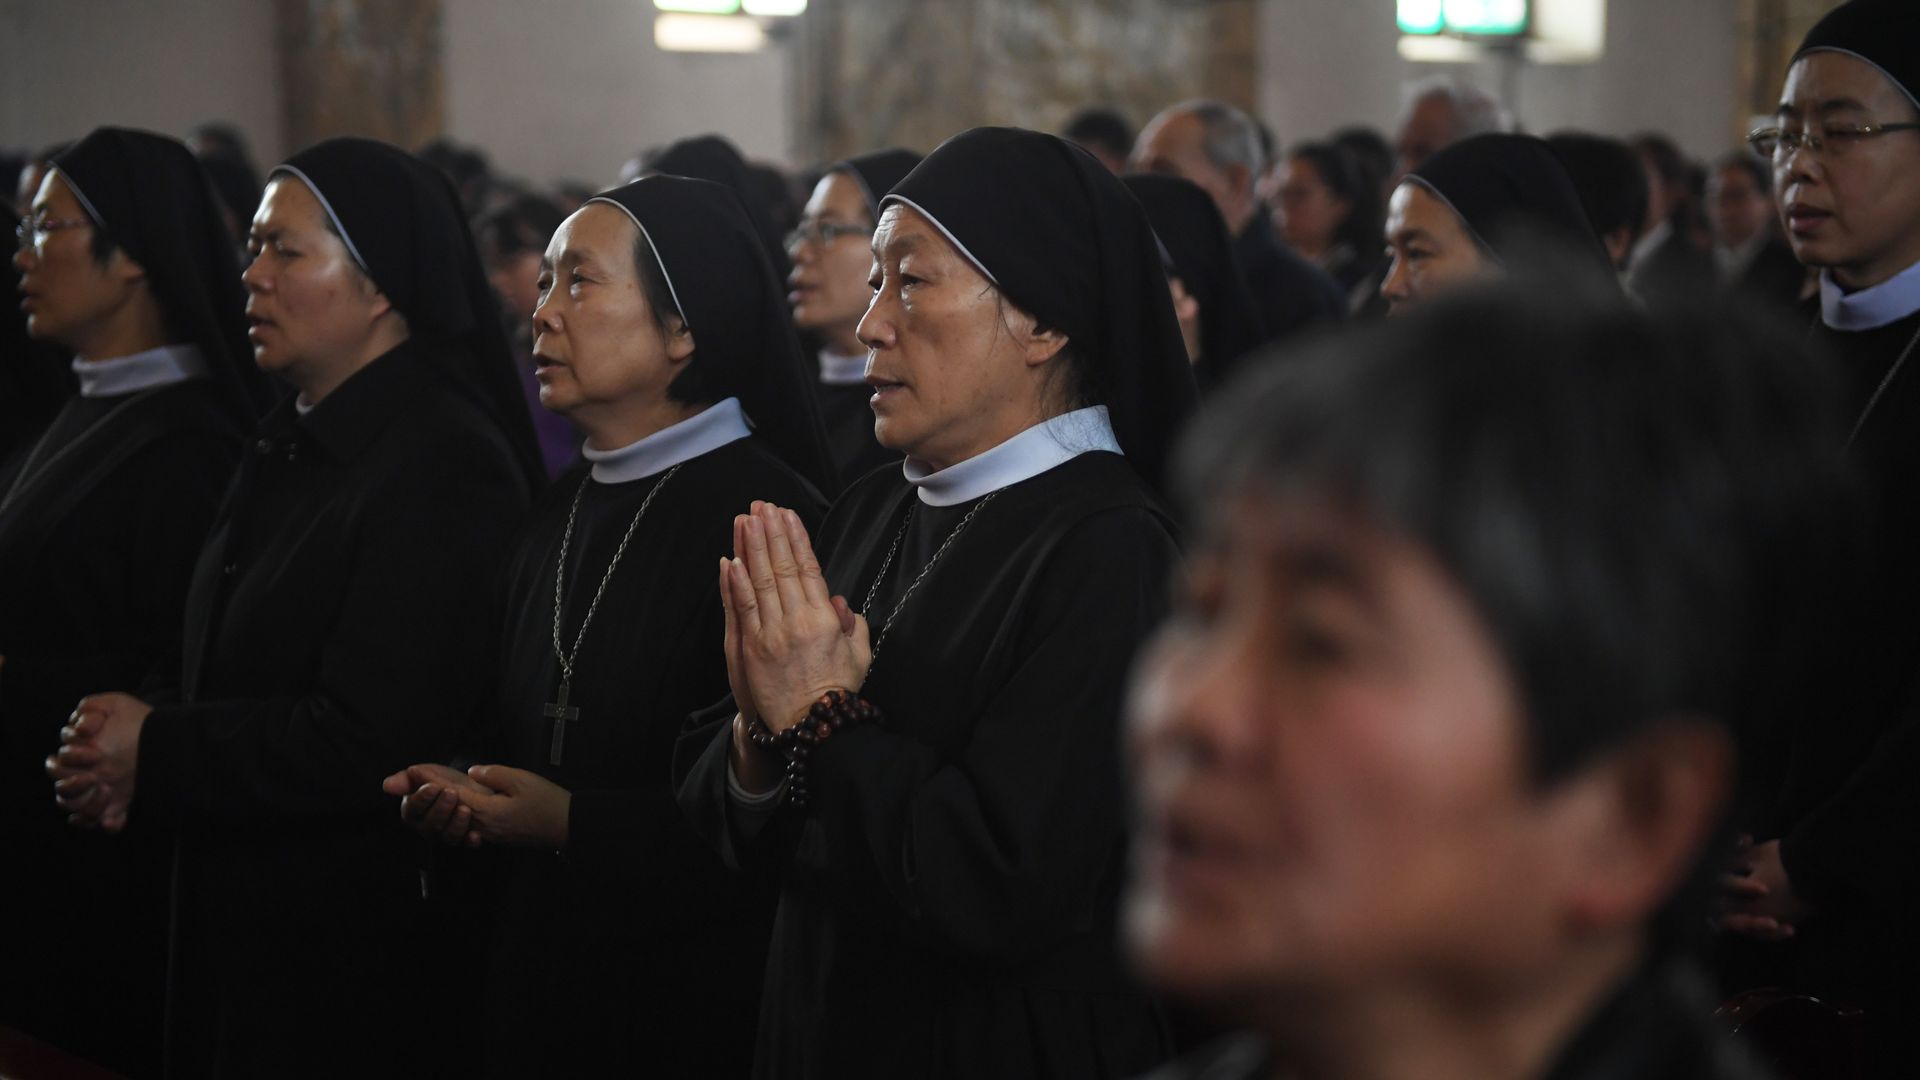 Catholic nuns at mass. 